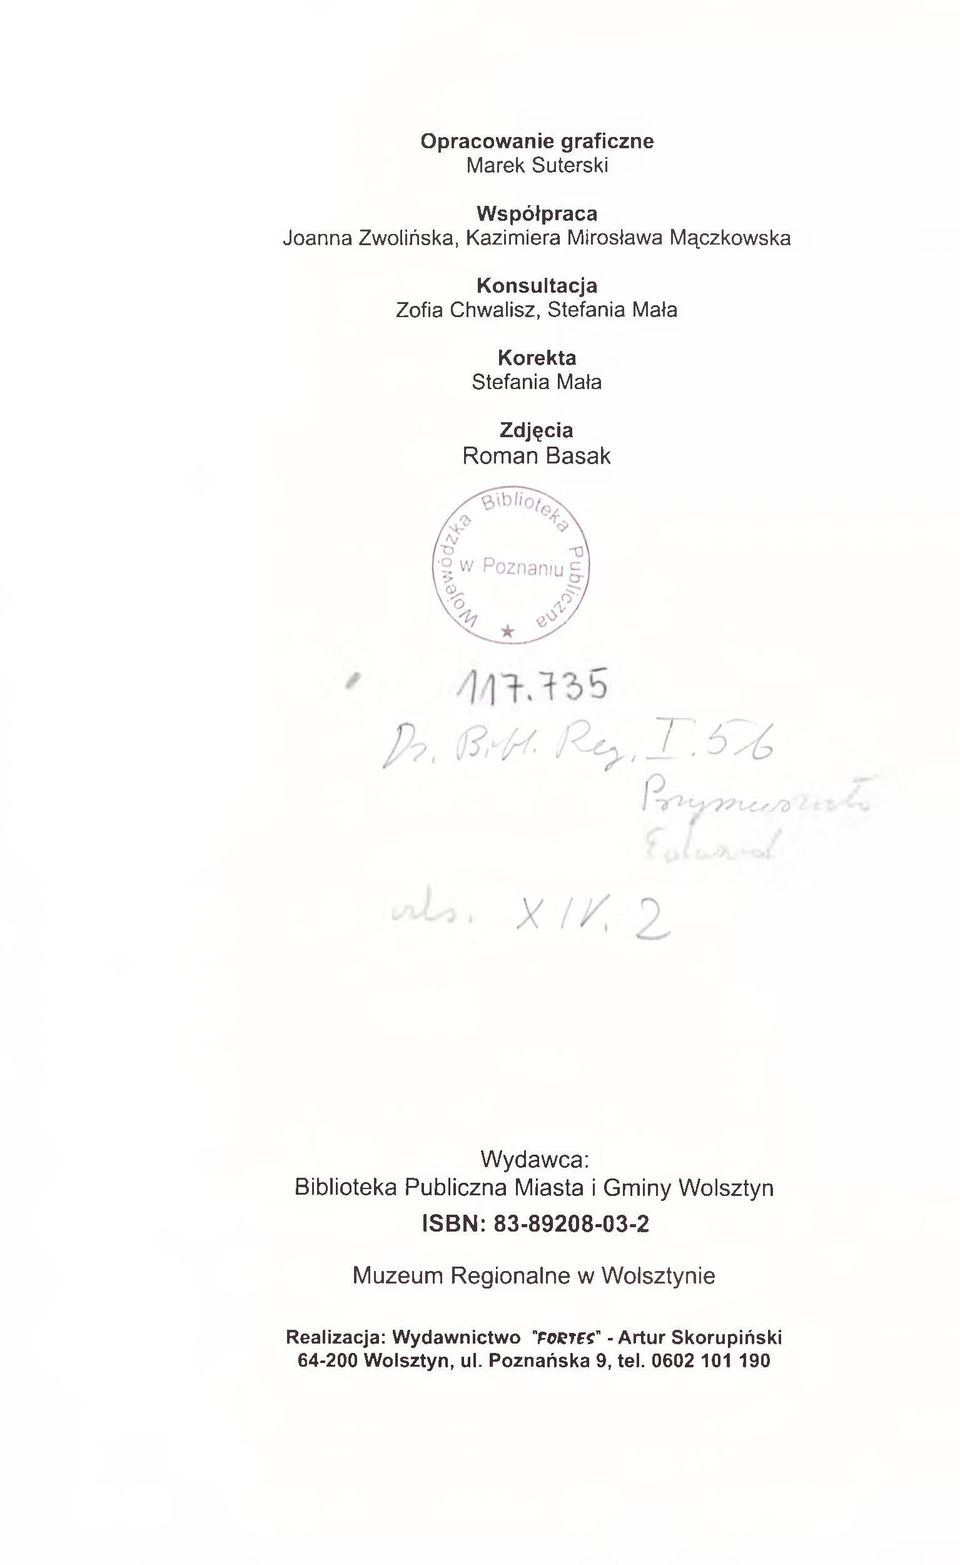 Basak Wydawca: Biblioteka Publiczna Miasta i Gminy Wolsztyn ISBN: 83-89208-03-2 Muzeum Regionalne w